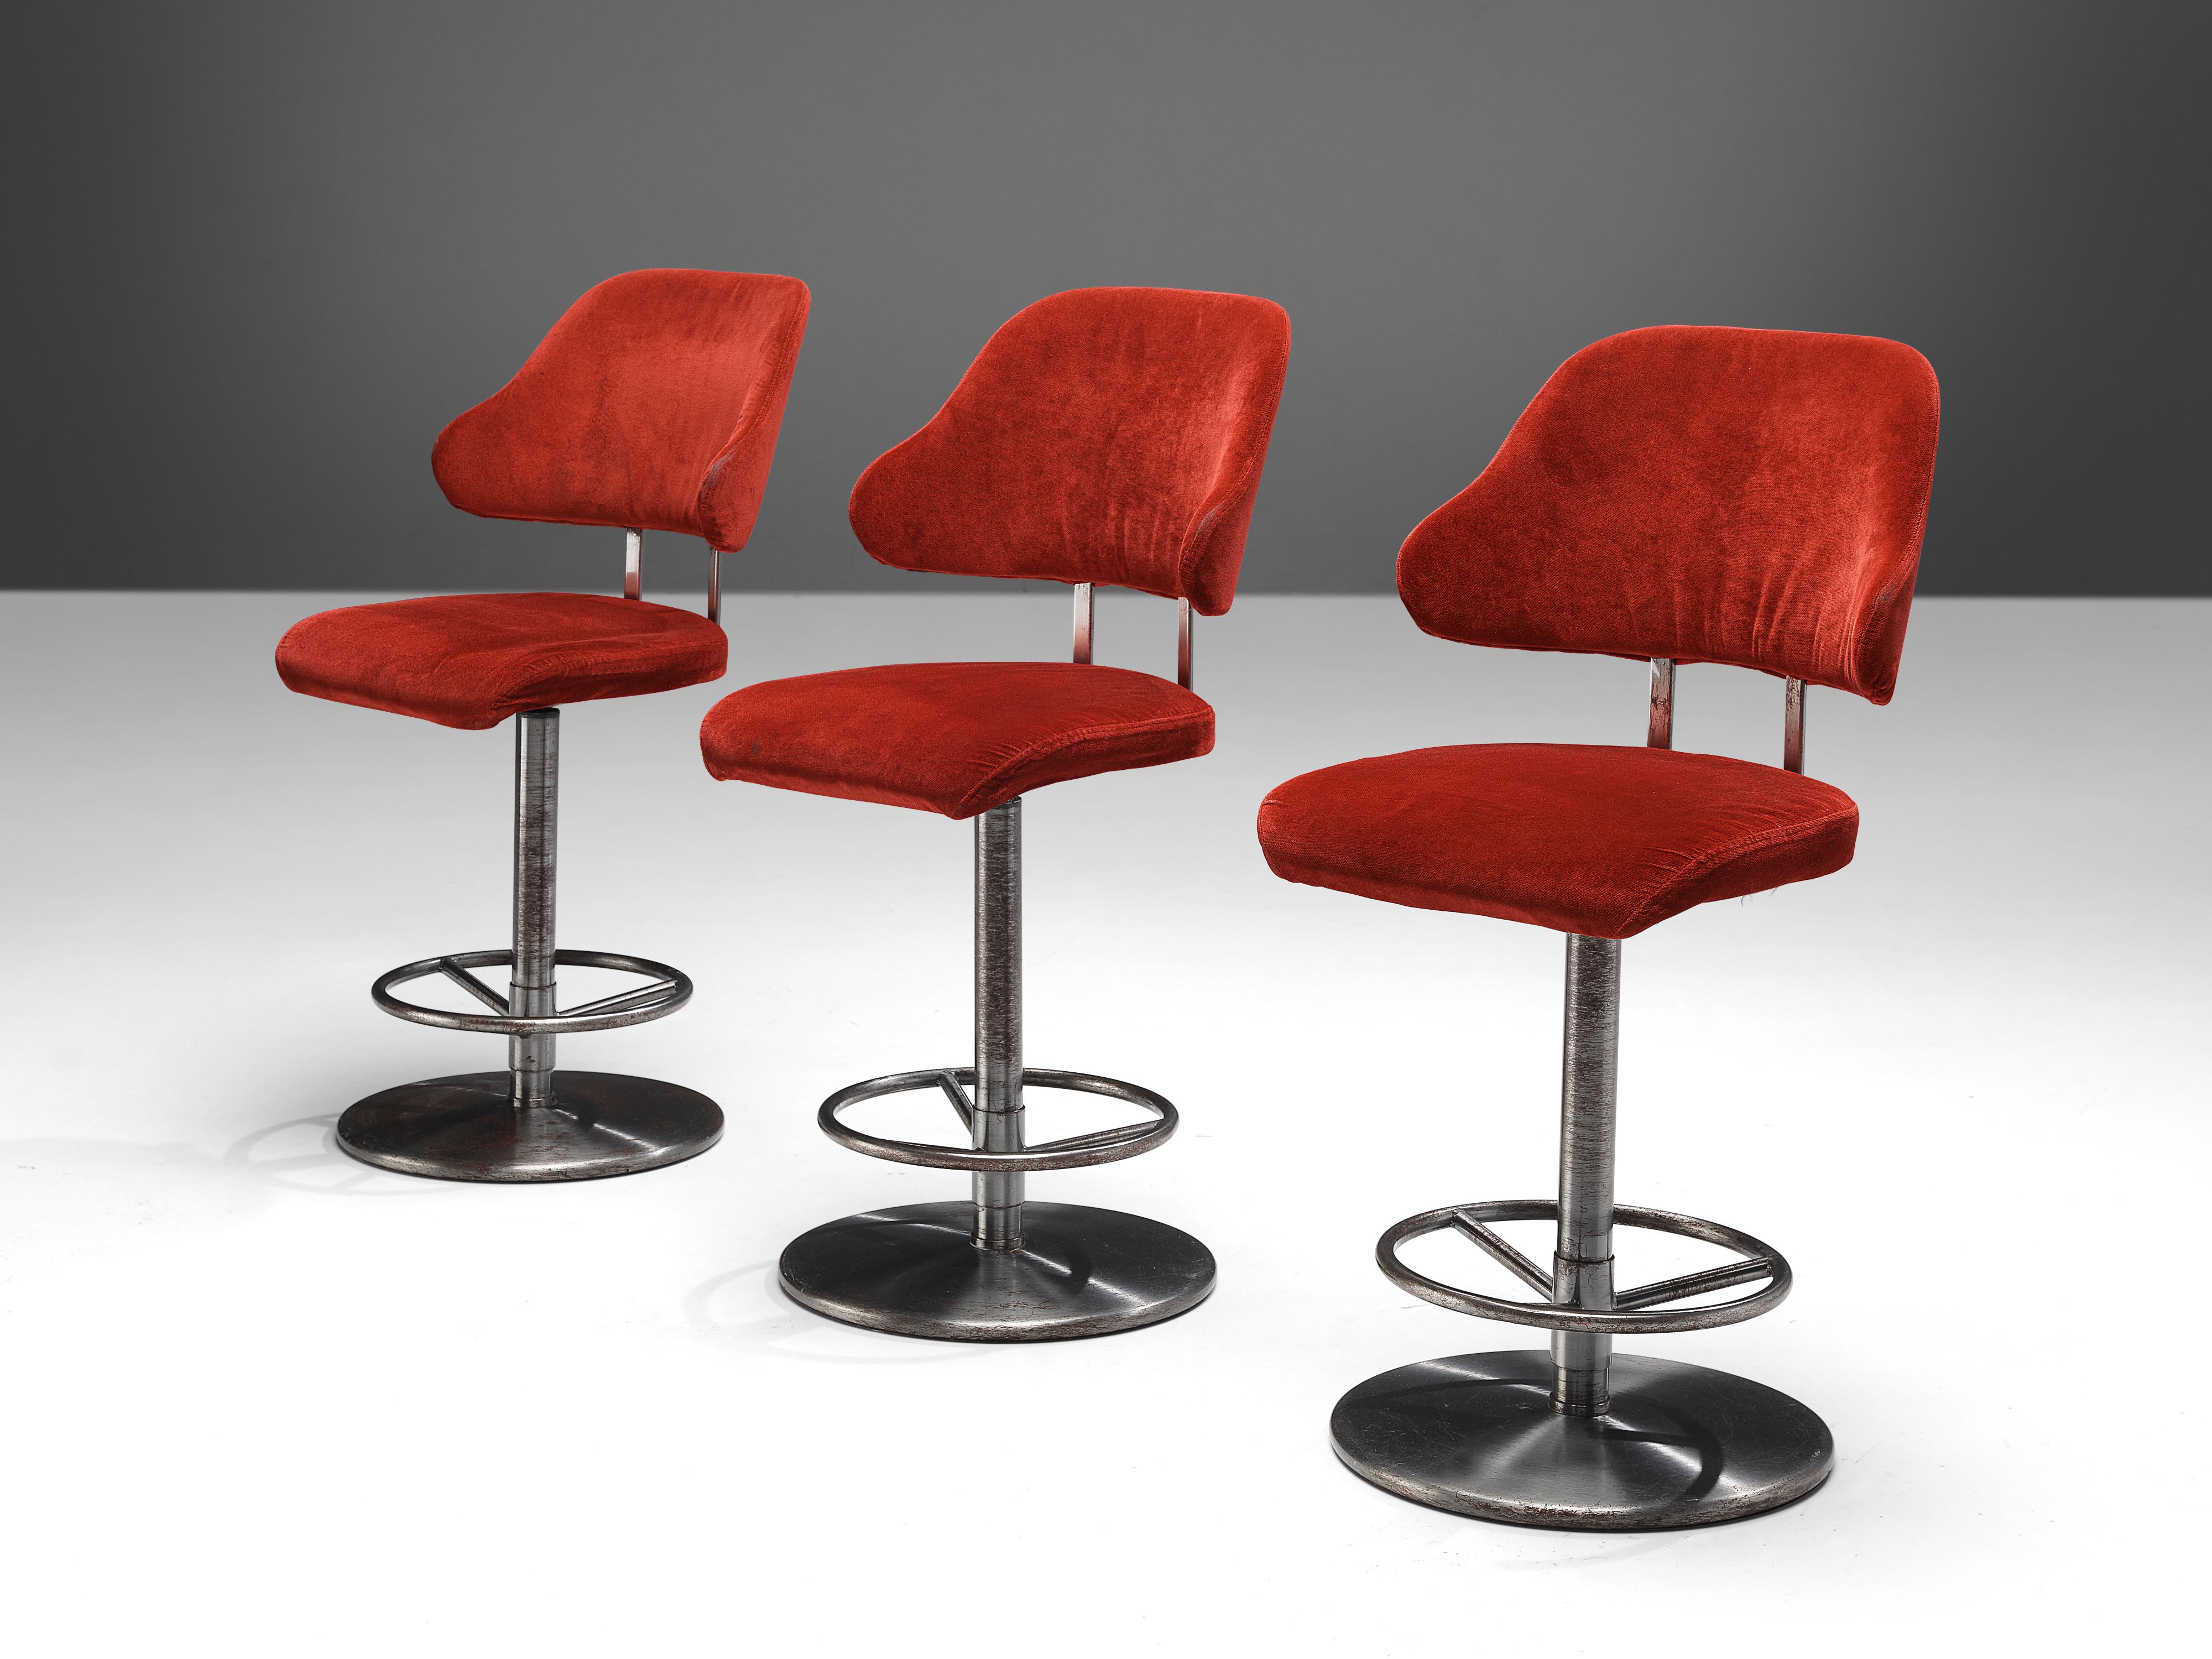 European Set of Three Barstools in Red Velvet Upholstery